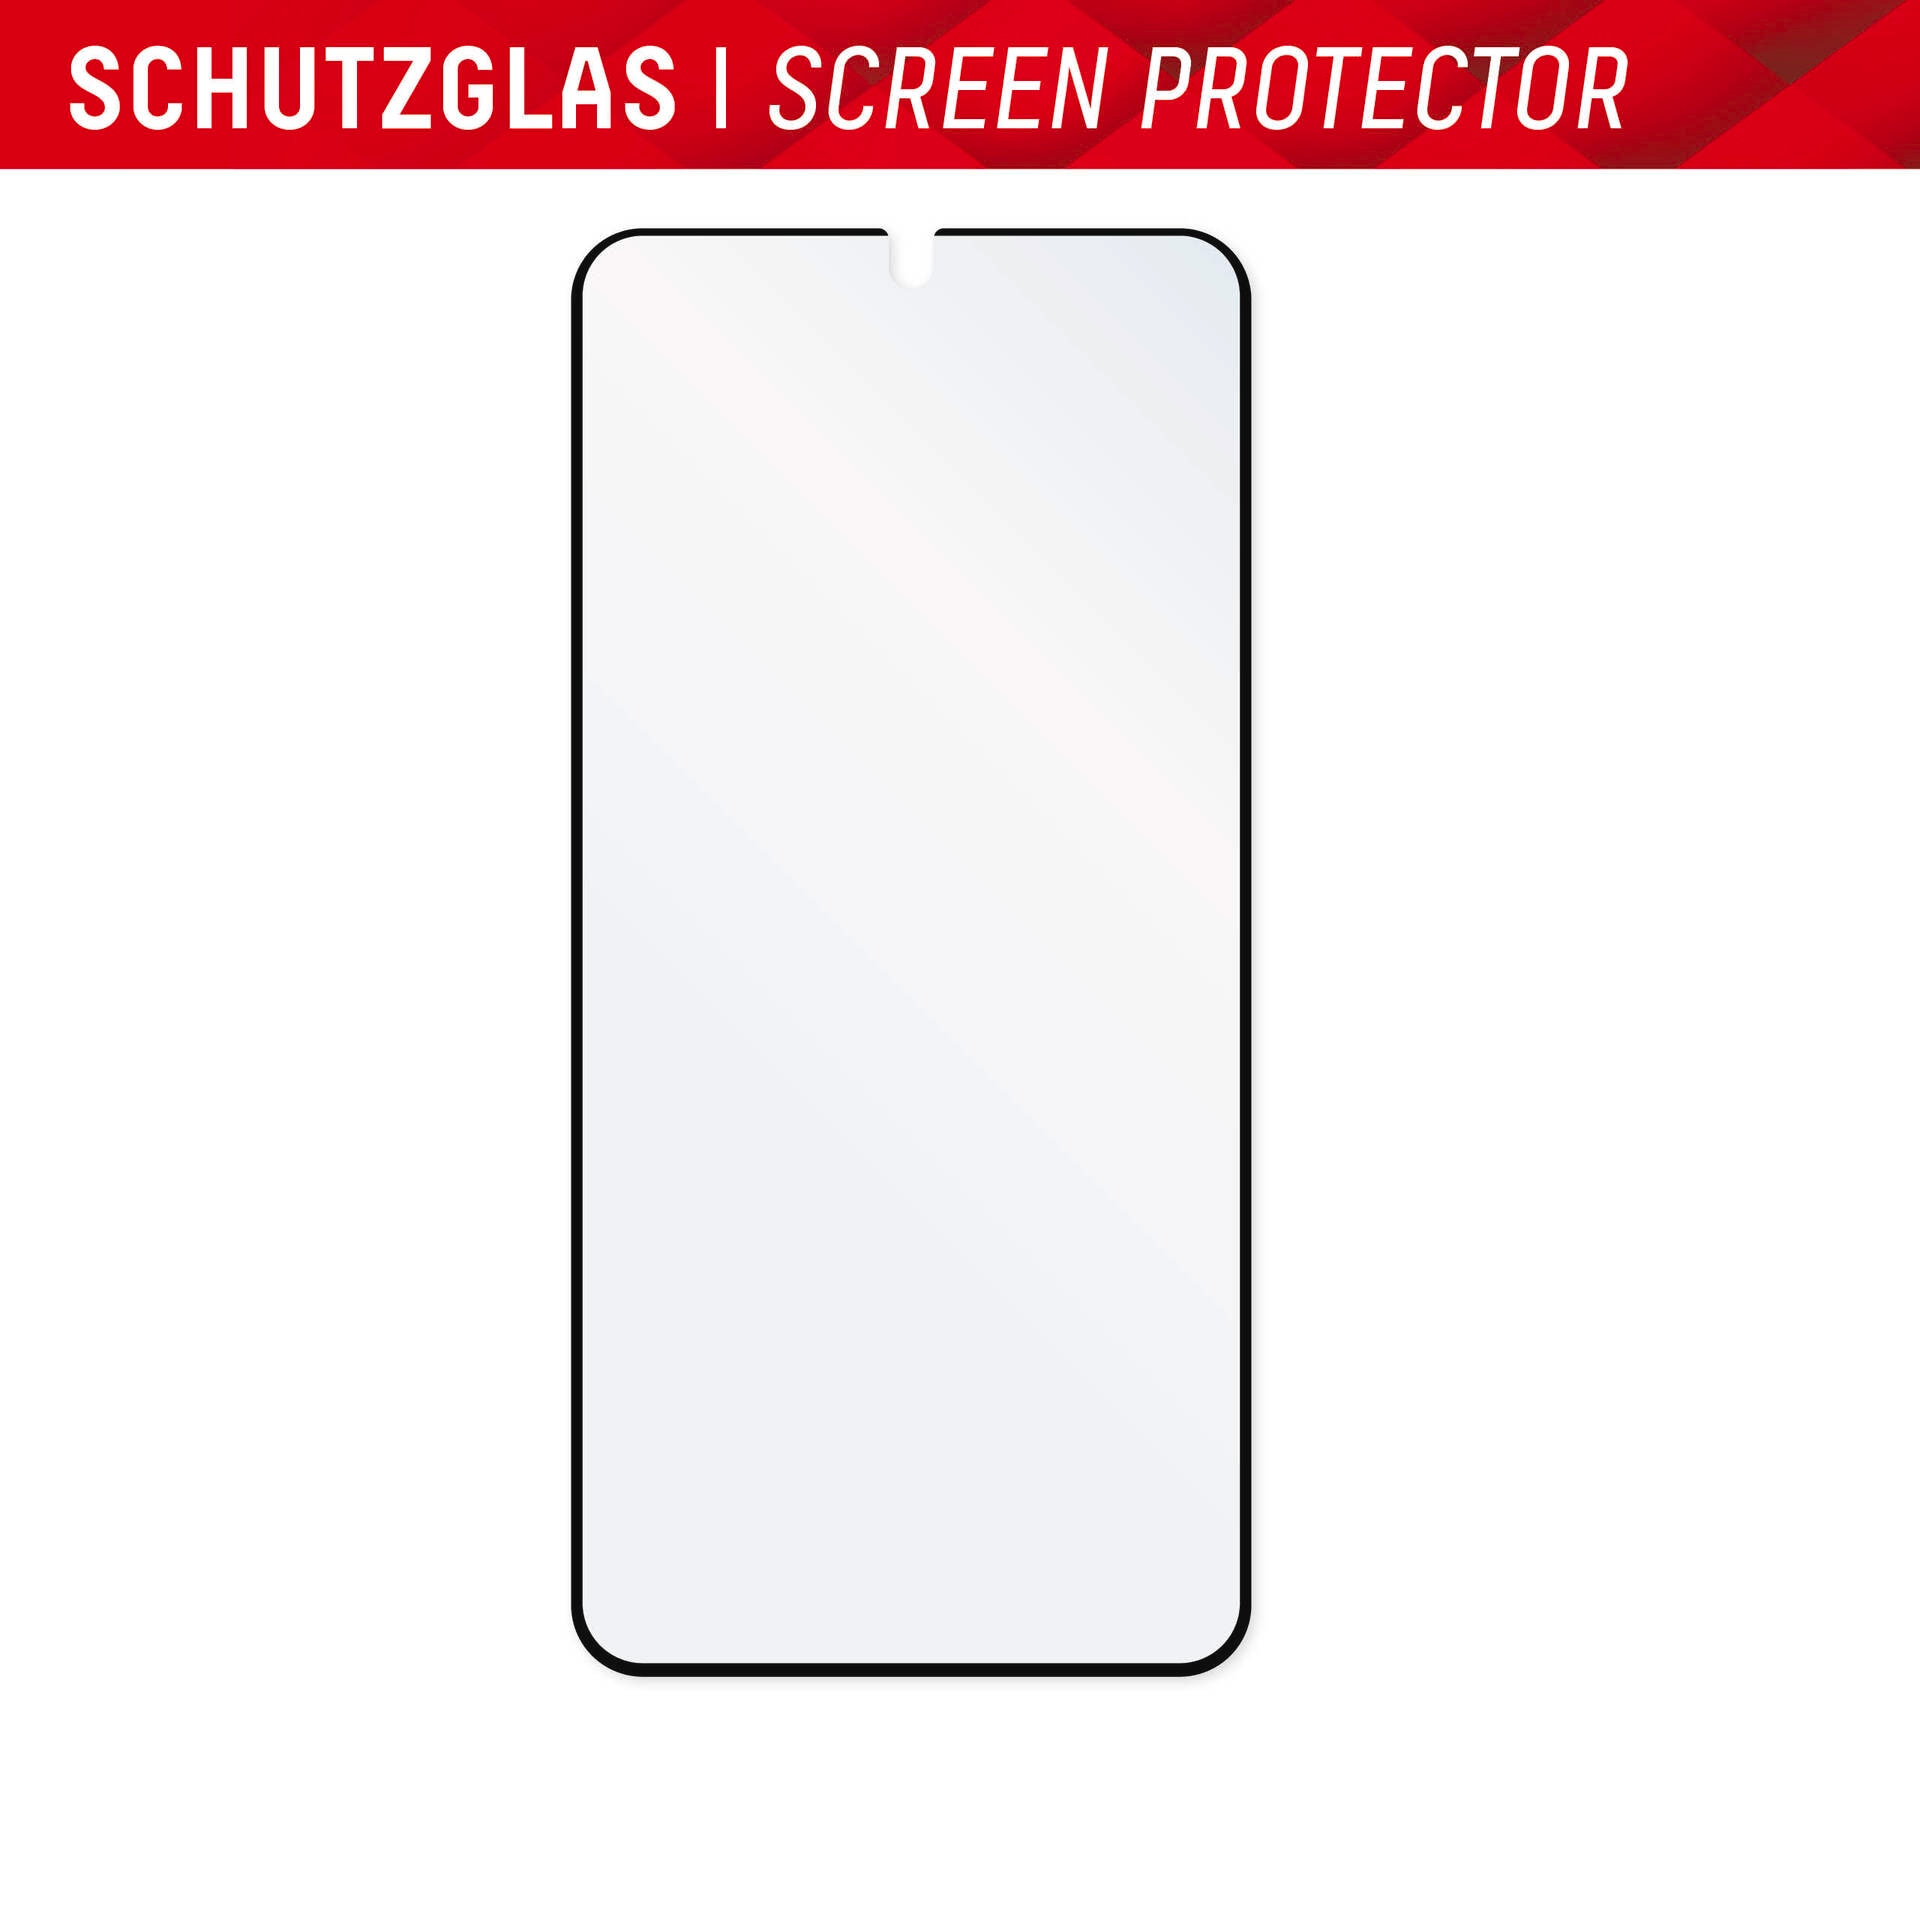 Displex Displayschutzglas »ProTouch Glass Eco - Samsung S23 Ultra«, Displayschutzfolie Displayschutz kratzer-resistent 9H unzerbrechlich